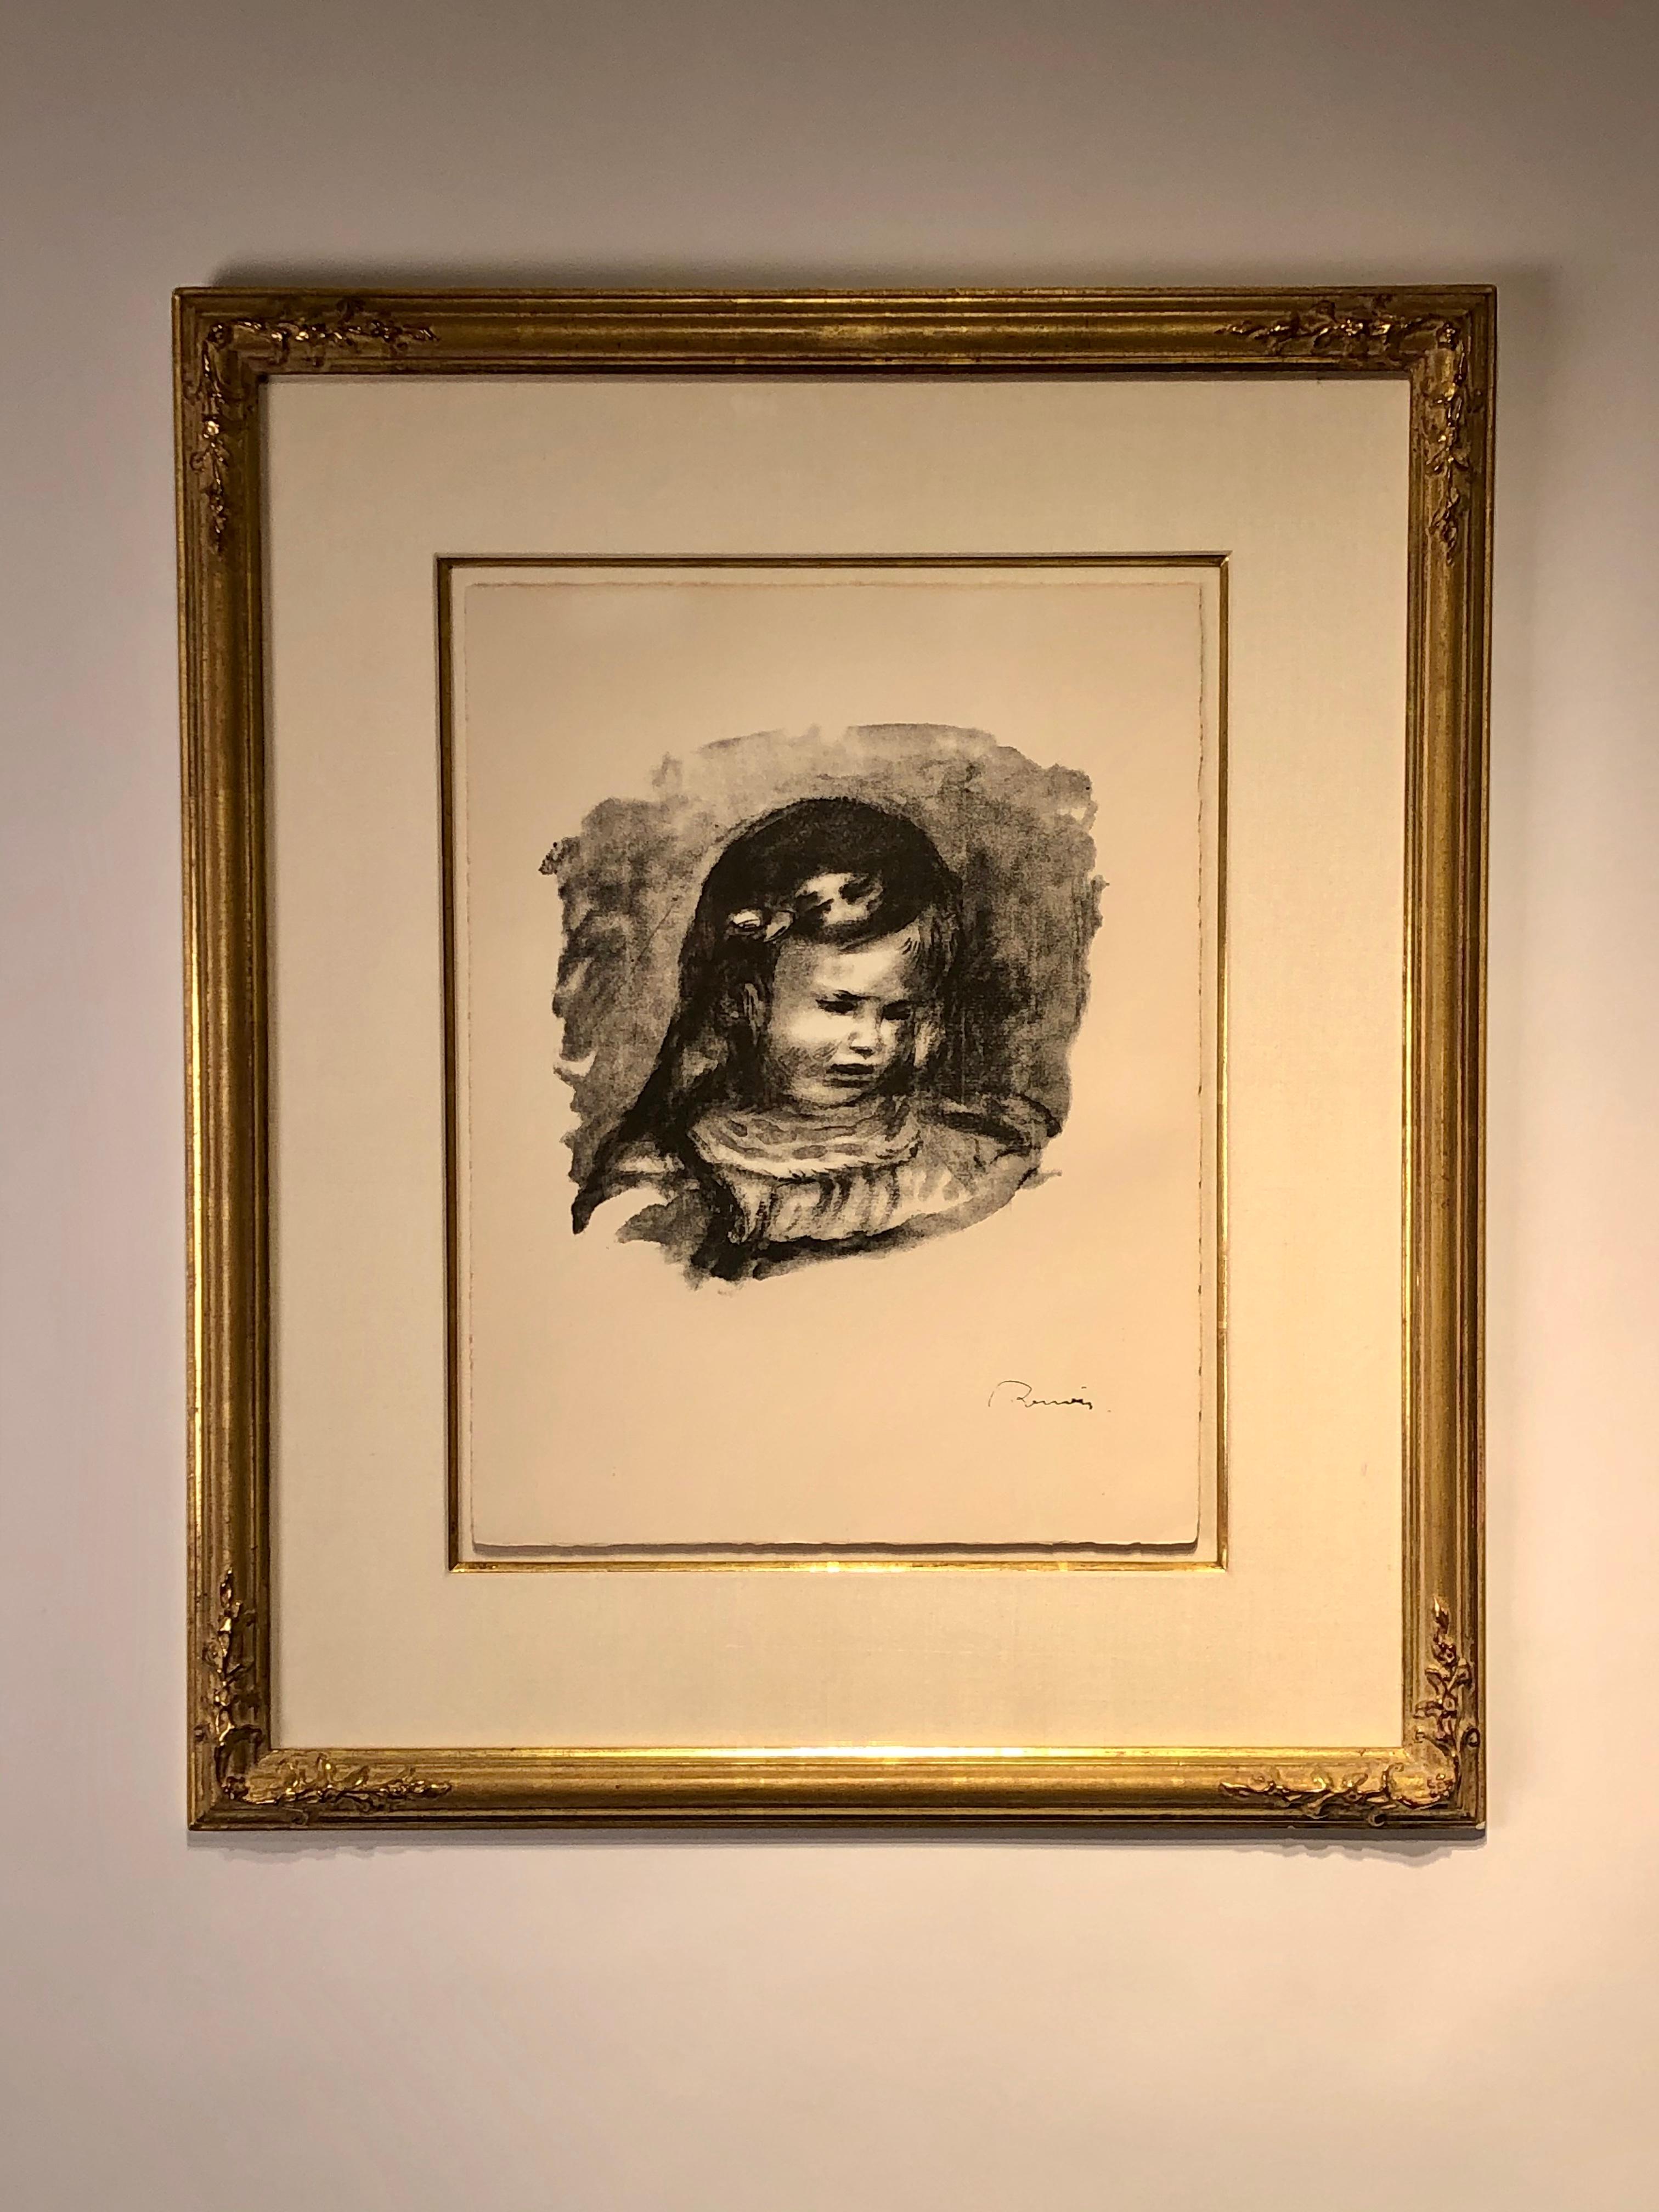 Claude Renoir, le tete baissee - Print by Pierre-Auguste Renoir